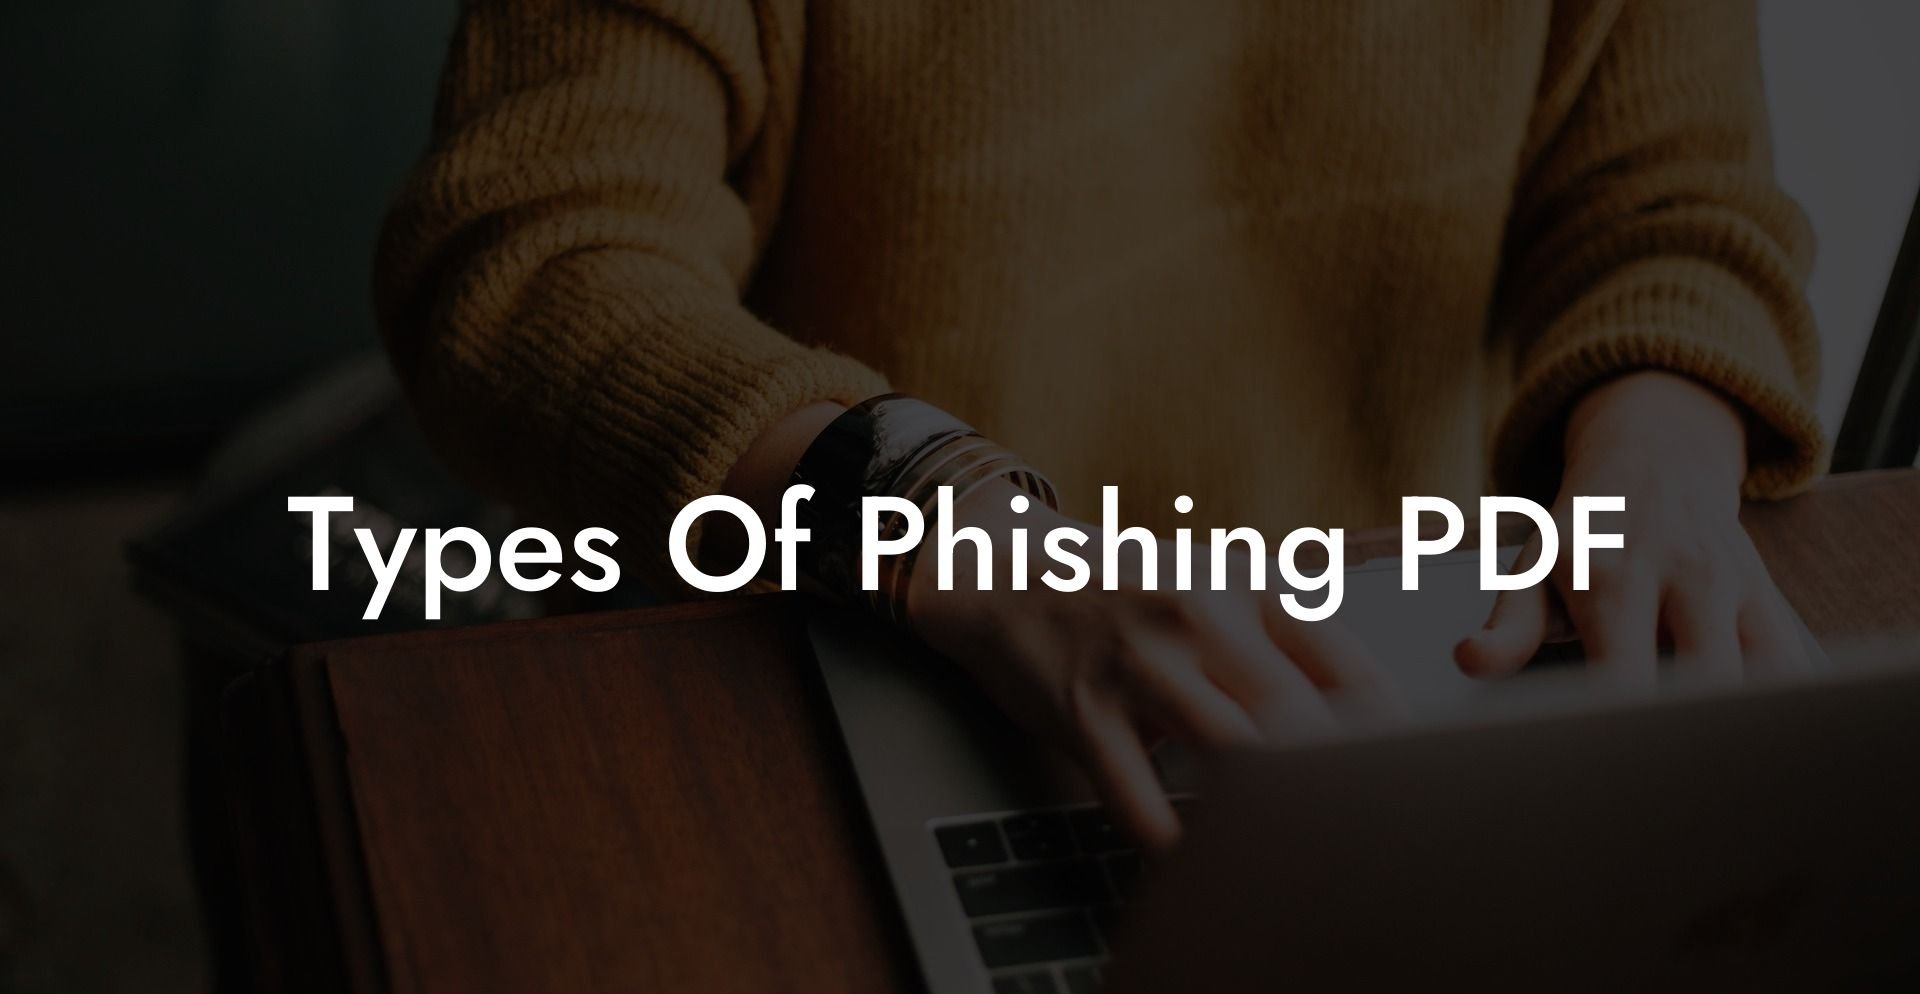 Types Of Phishing PDF